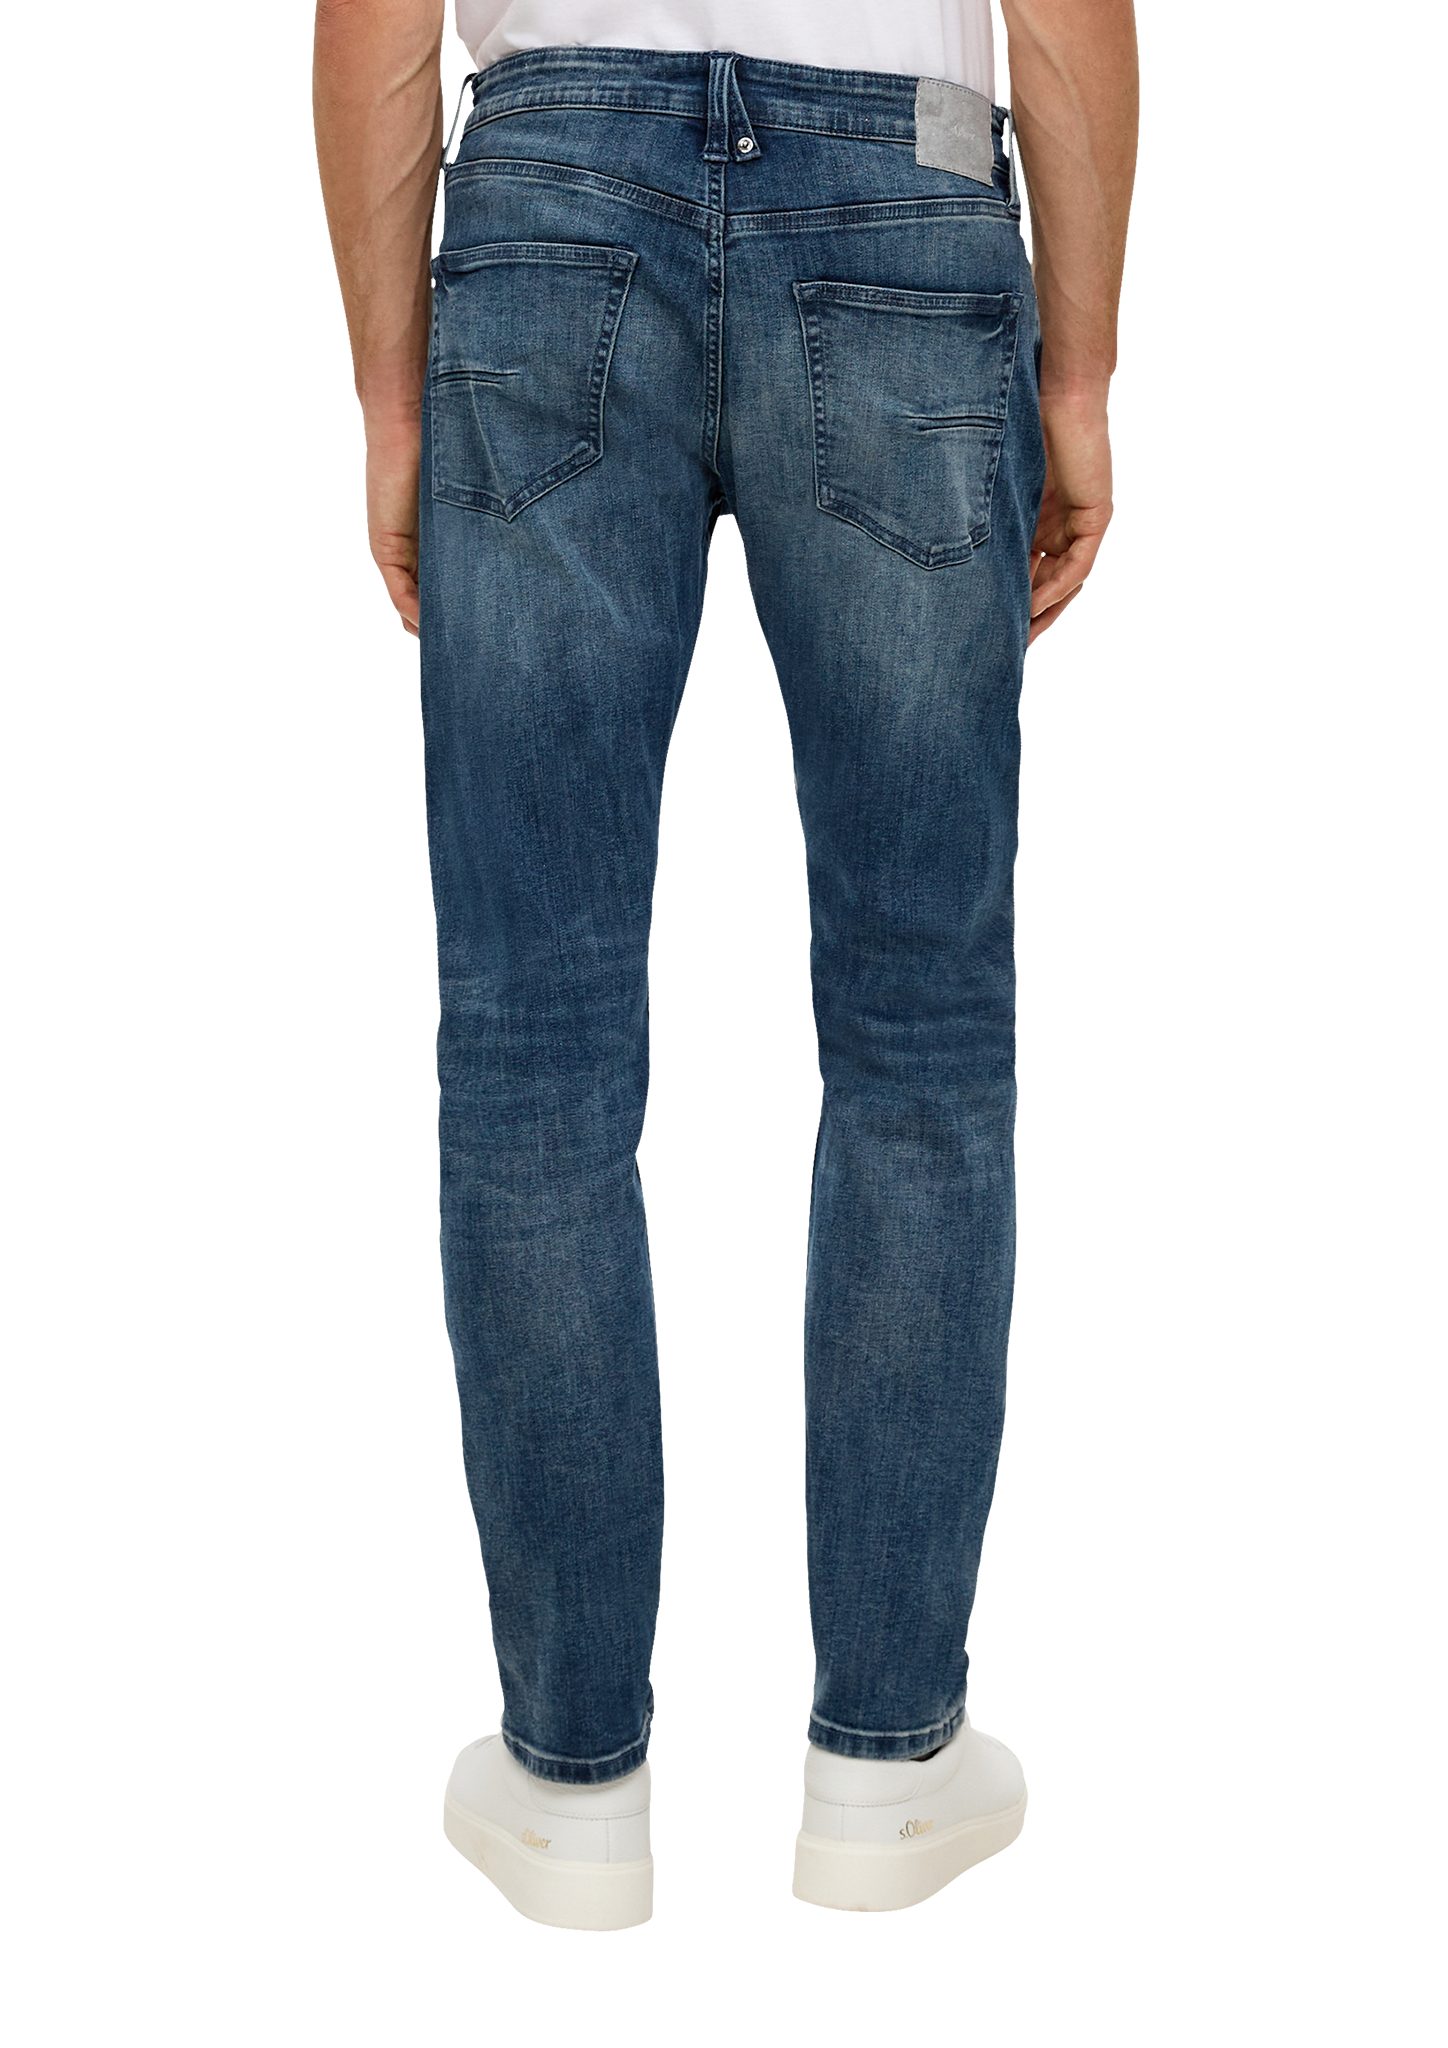 Waschung / / Mid Tapered Jeans Leder-Patch, 5-Pocket-Stil Fit / Rise Leg s.Oliver Regular / Stoffhose dunkelblau